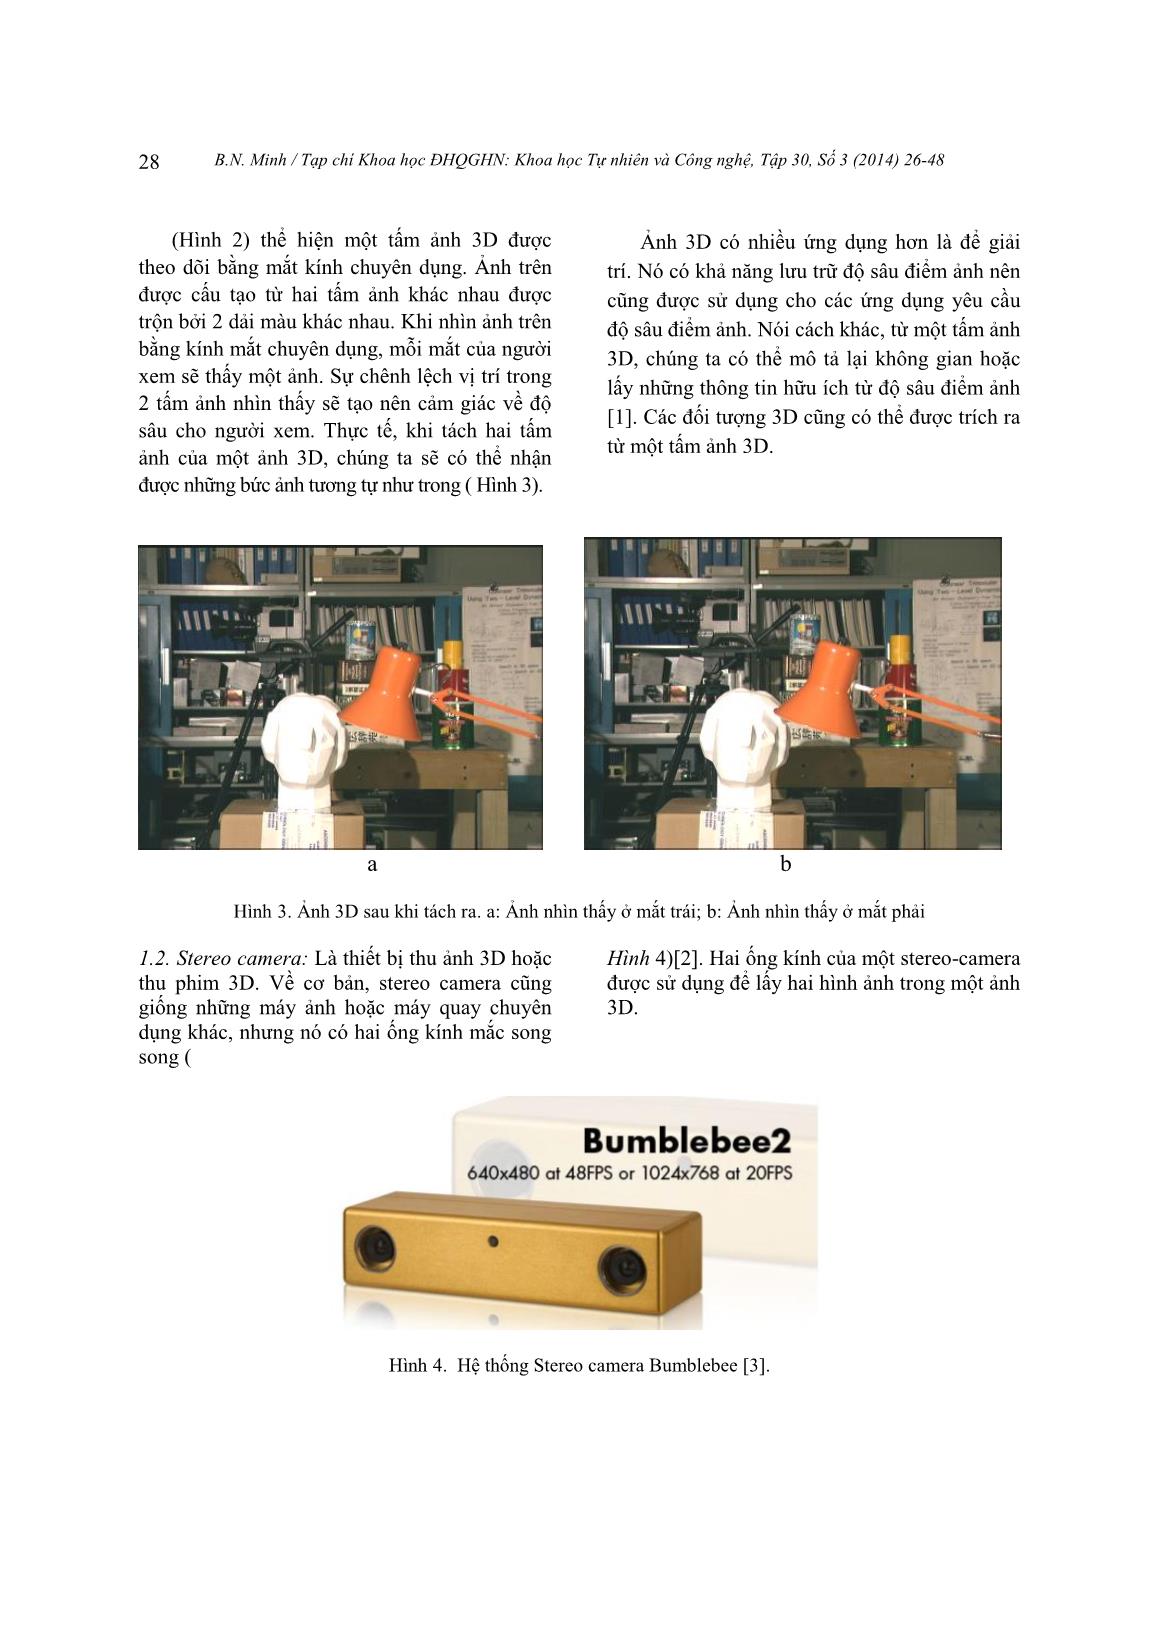 Nghiên cứu so sánh các thuật toán xử lý ảnh tính độ sâu ảnh stereo ứng dụng trong hệ thống camera thị giác trang 3